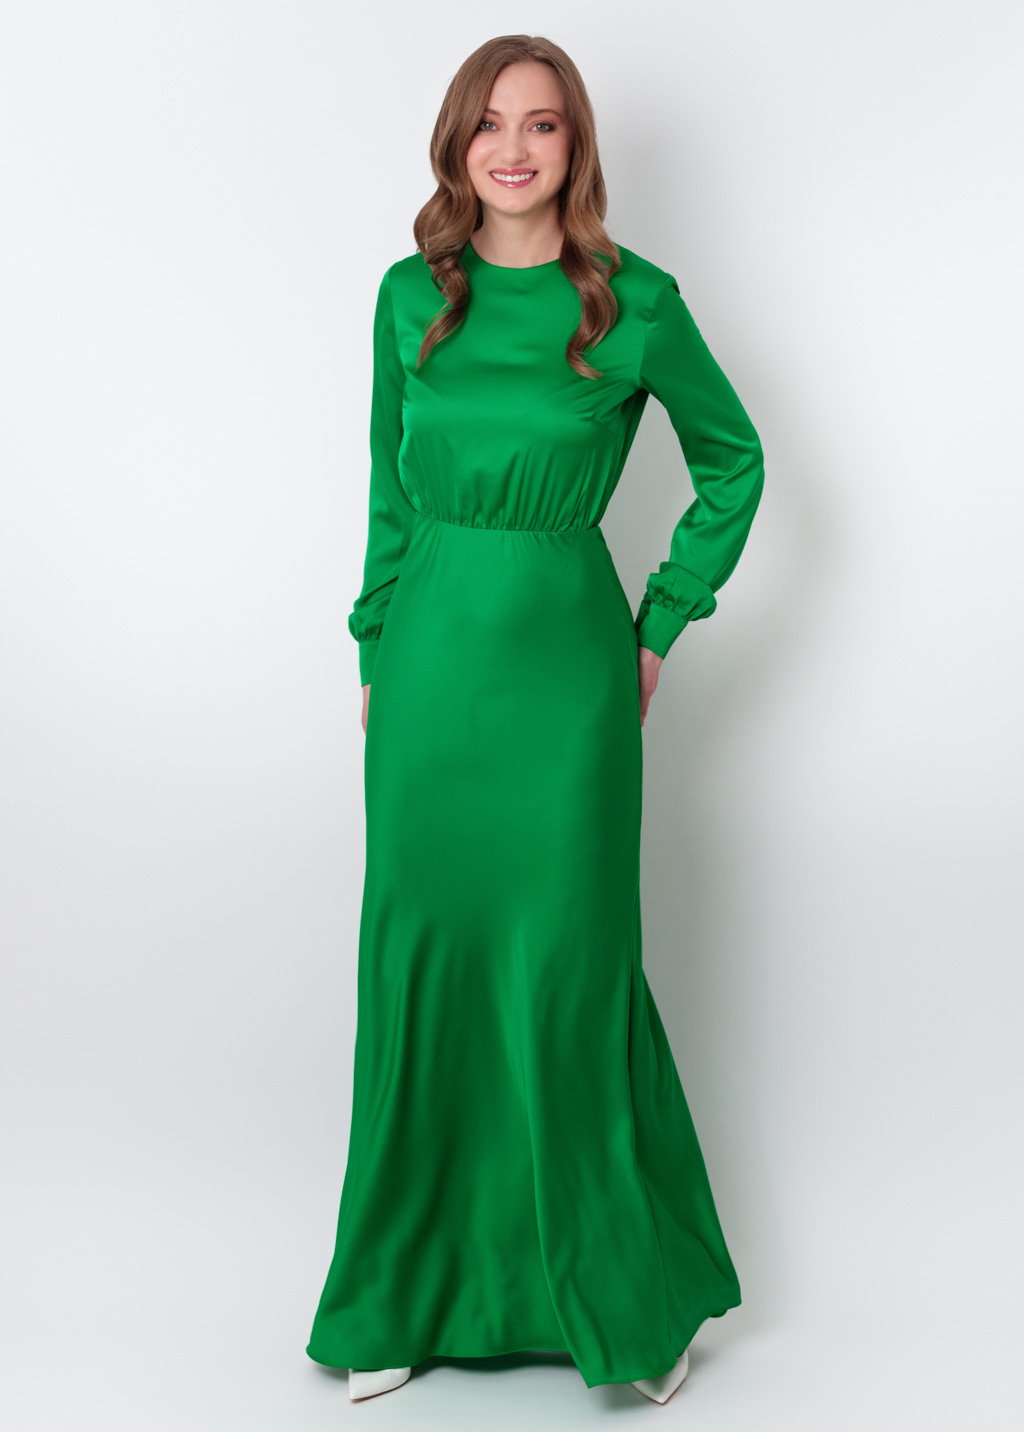 Green silk long dress